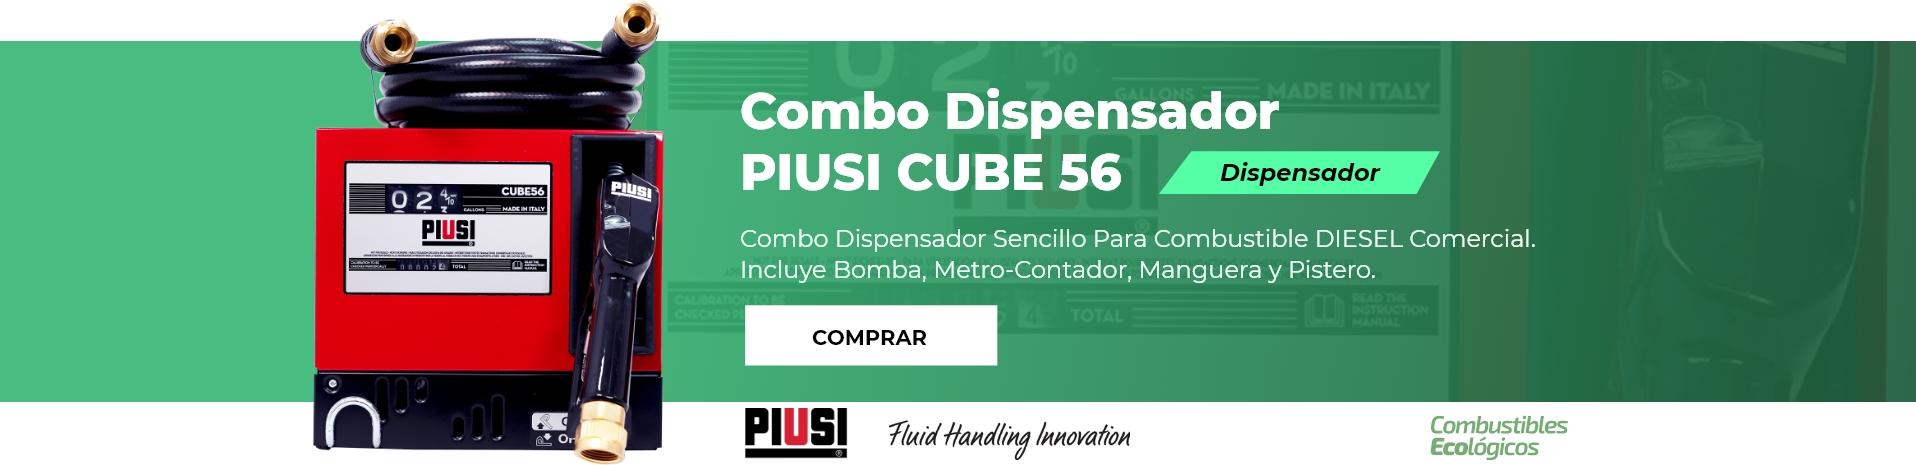 Combo Dispensador PIUSI CUBE 56  -  Combustible Ecológicos